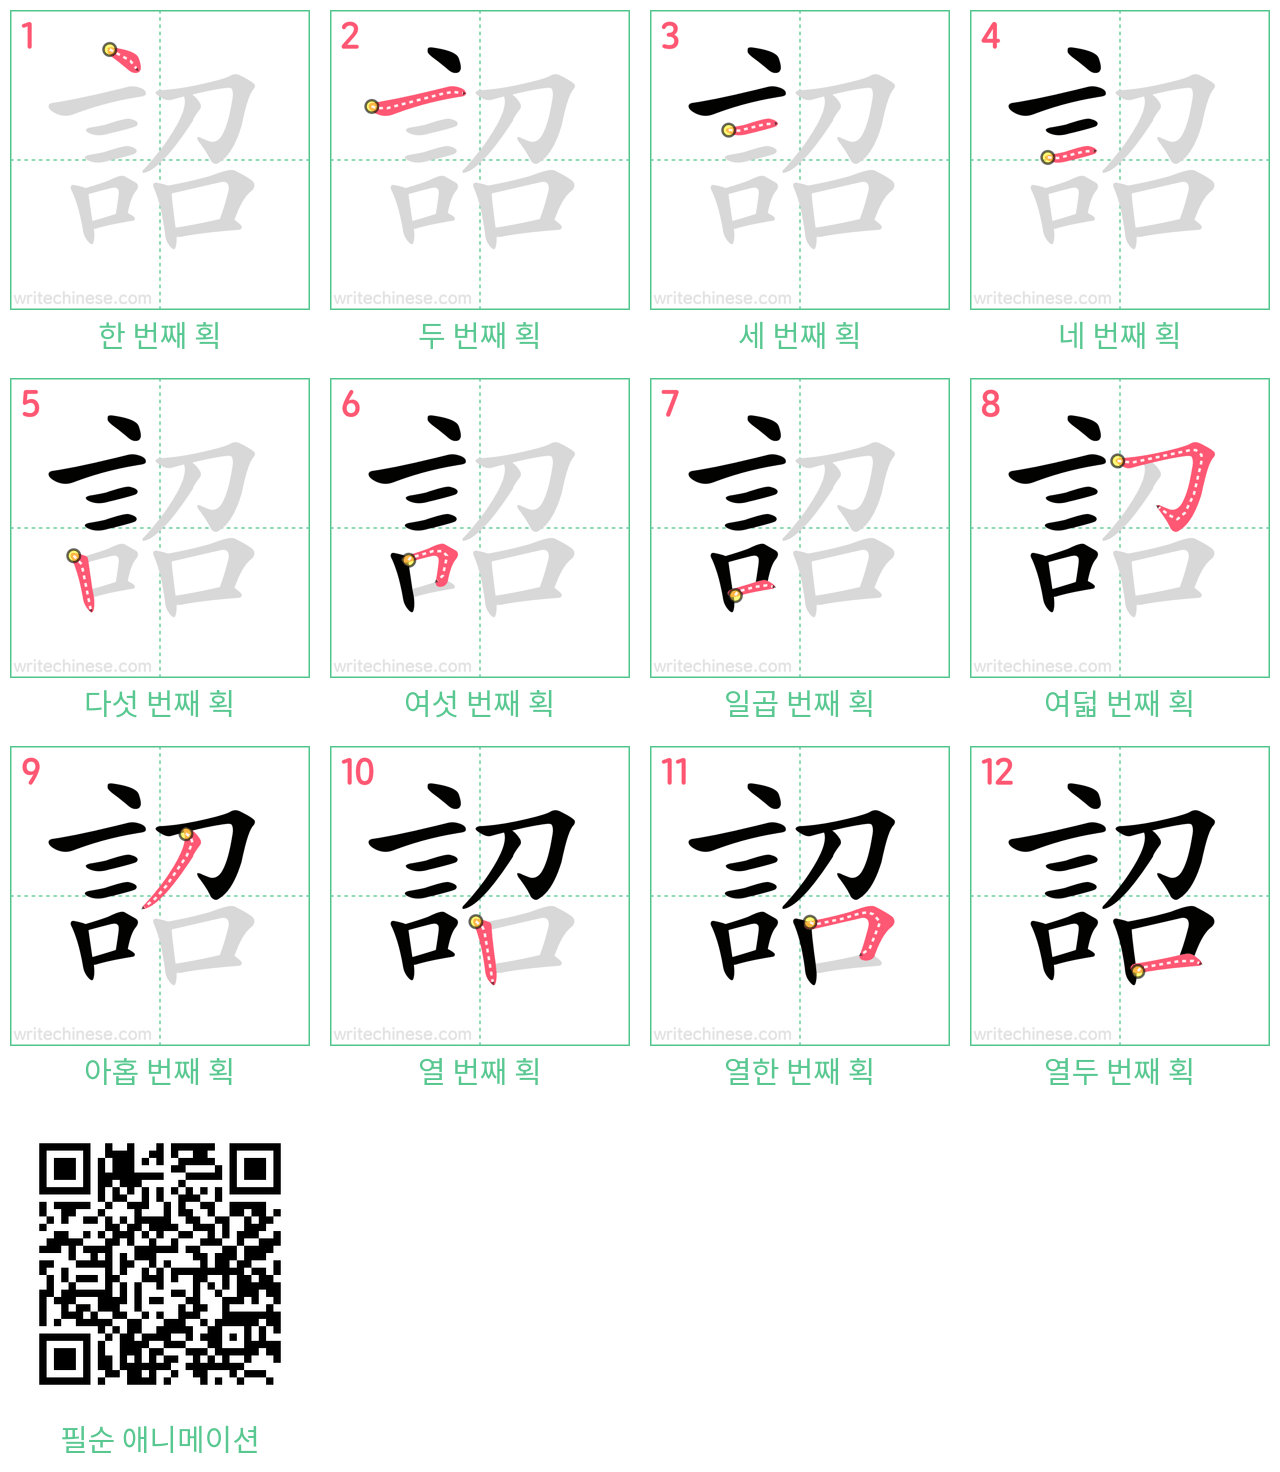 詔 step-by-step stroke order diagrams